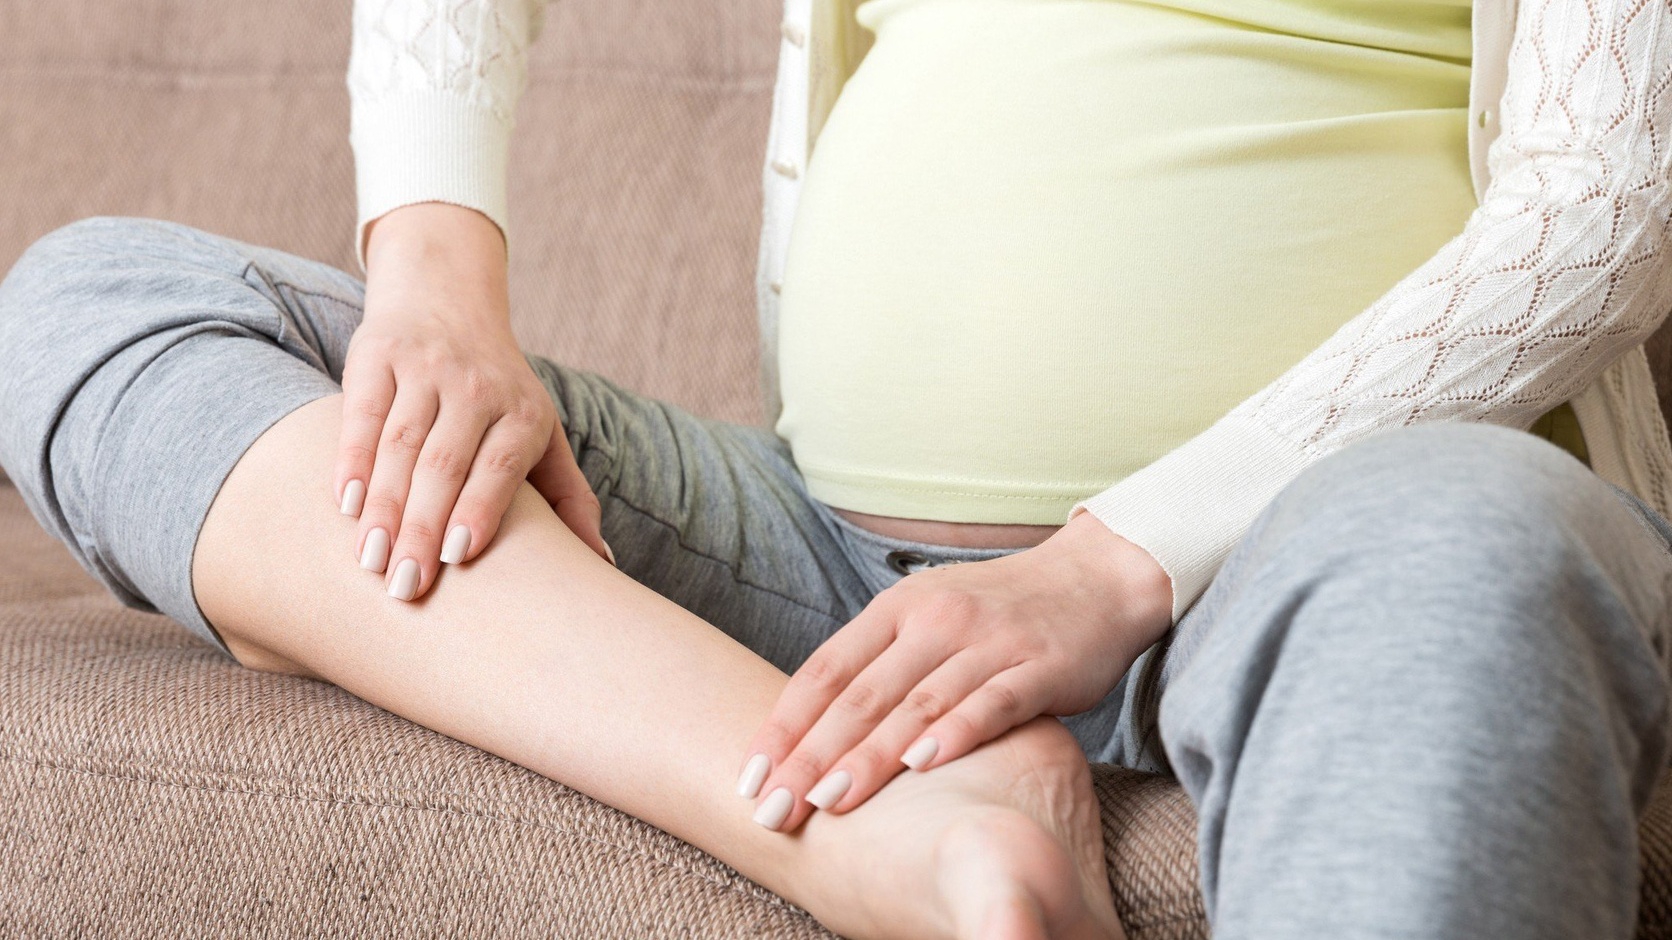 Tại sao mẹ bầu có thể mắc phải đau bắp chân khi mang thai?
